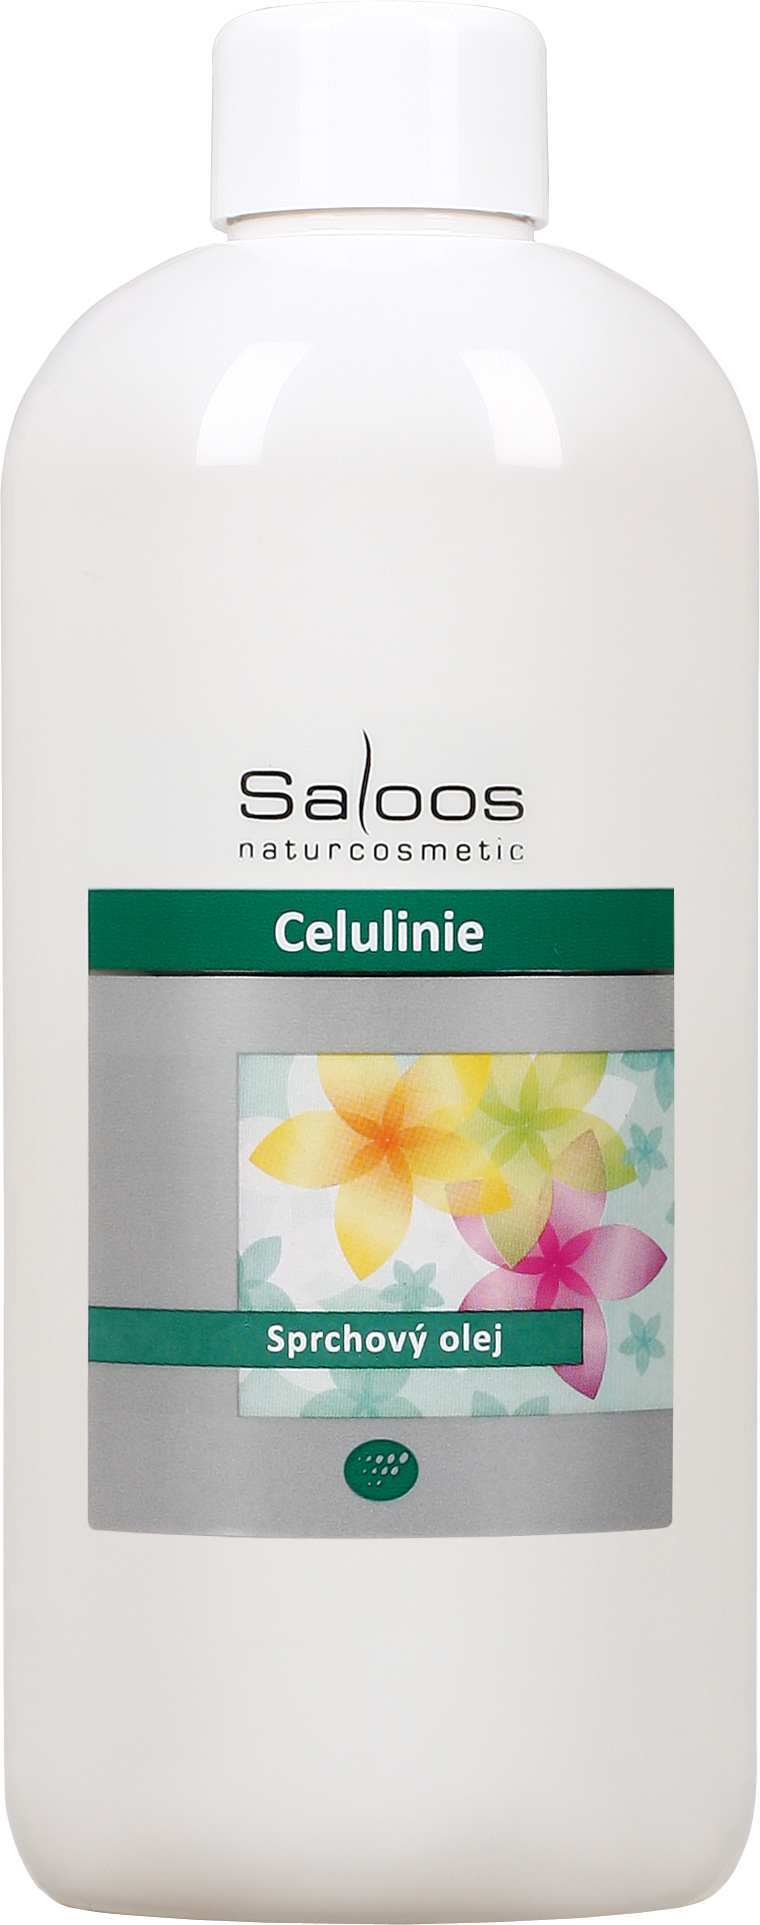 Saloos Celulinie - sprchový olej Balení: 500 ml